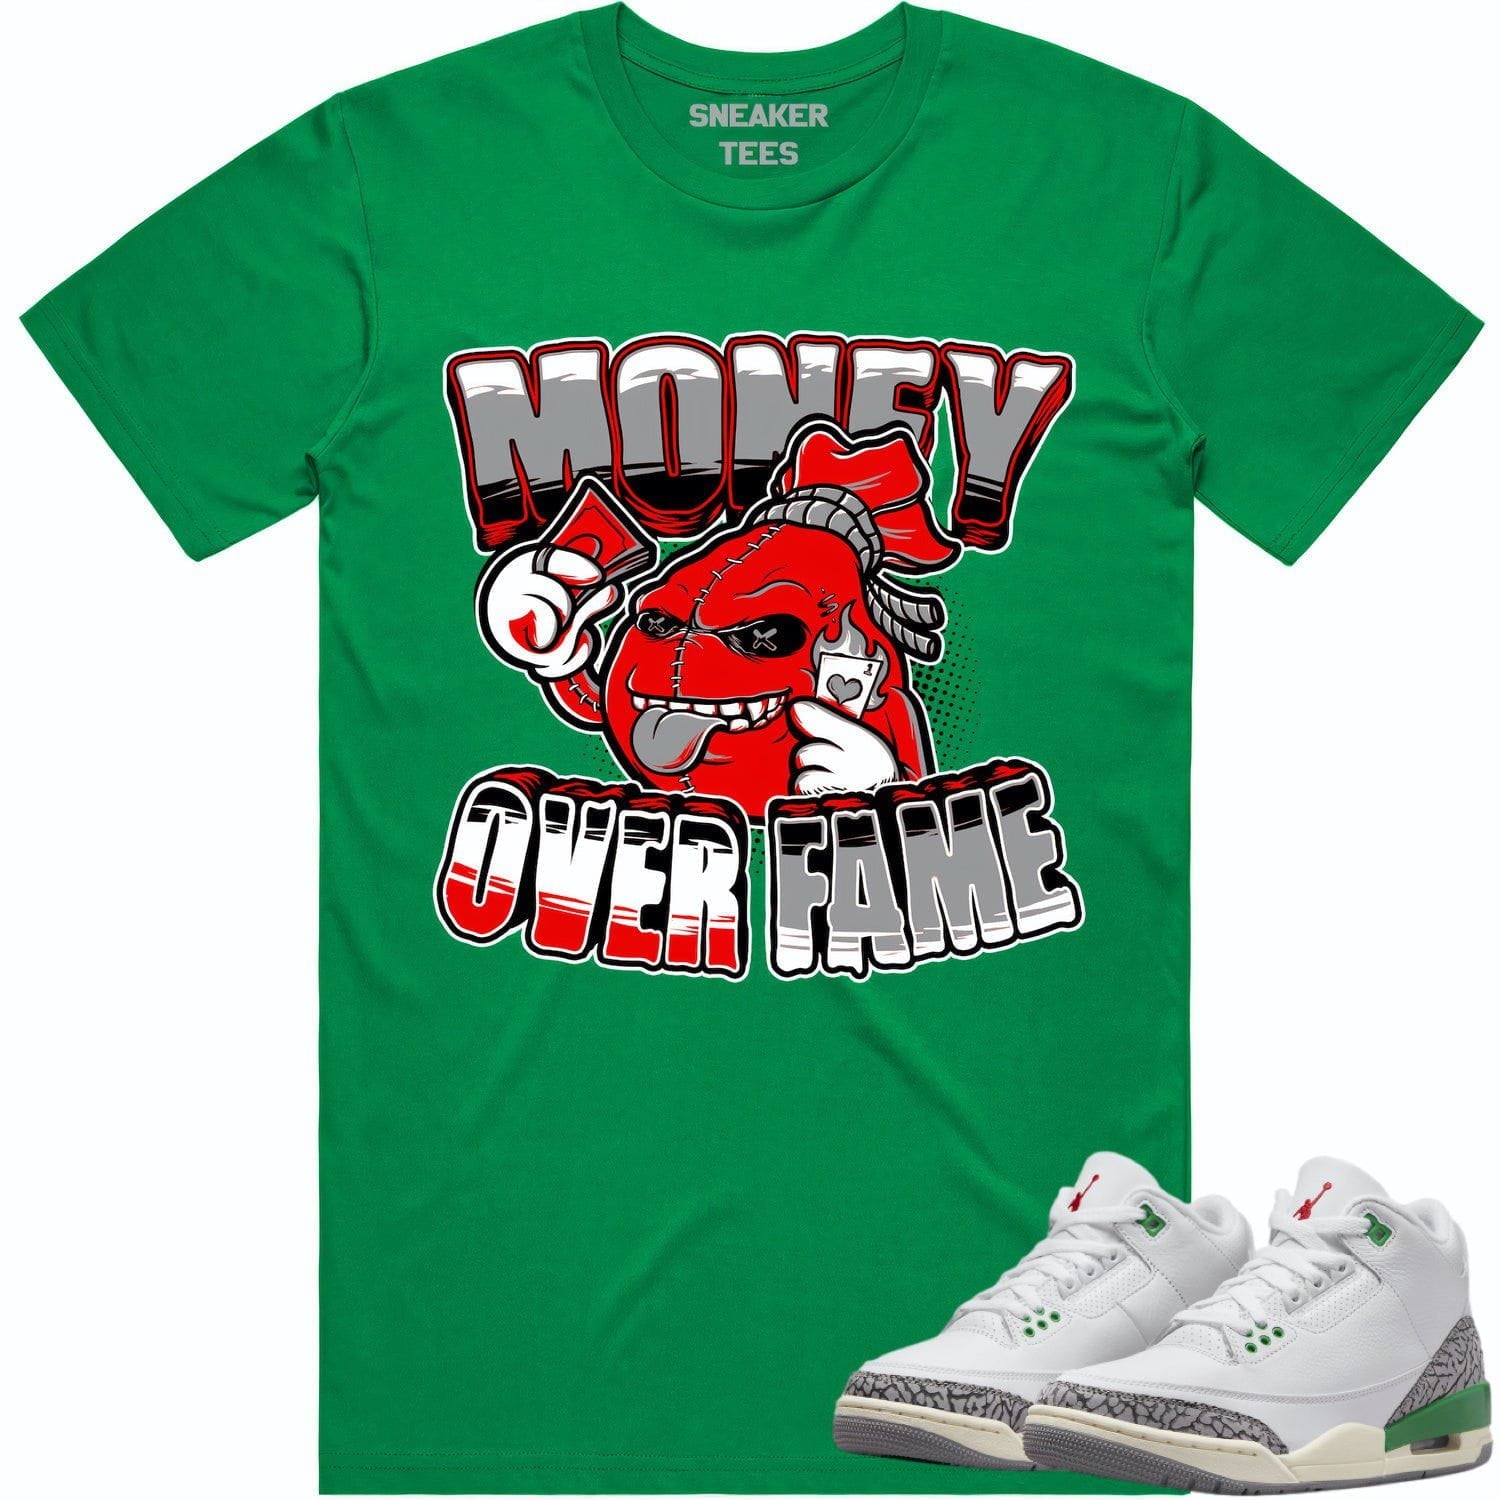 Lucky Green 3s Shirt - Jordan Retro 3 Lucky Green Shirt - Money Fame